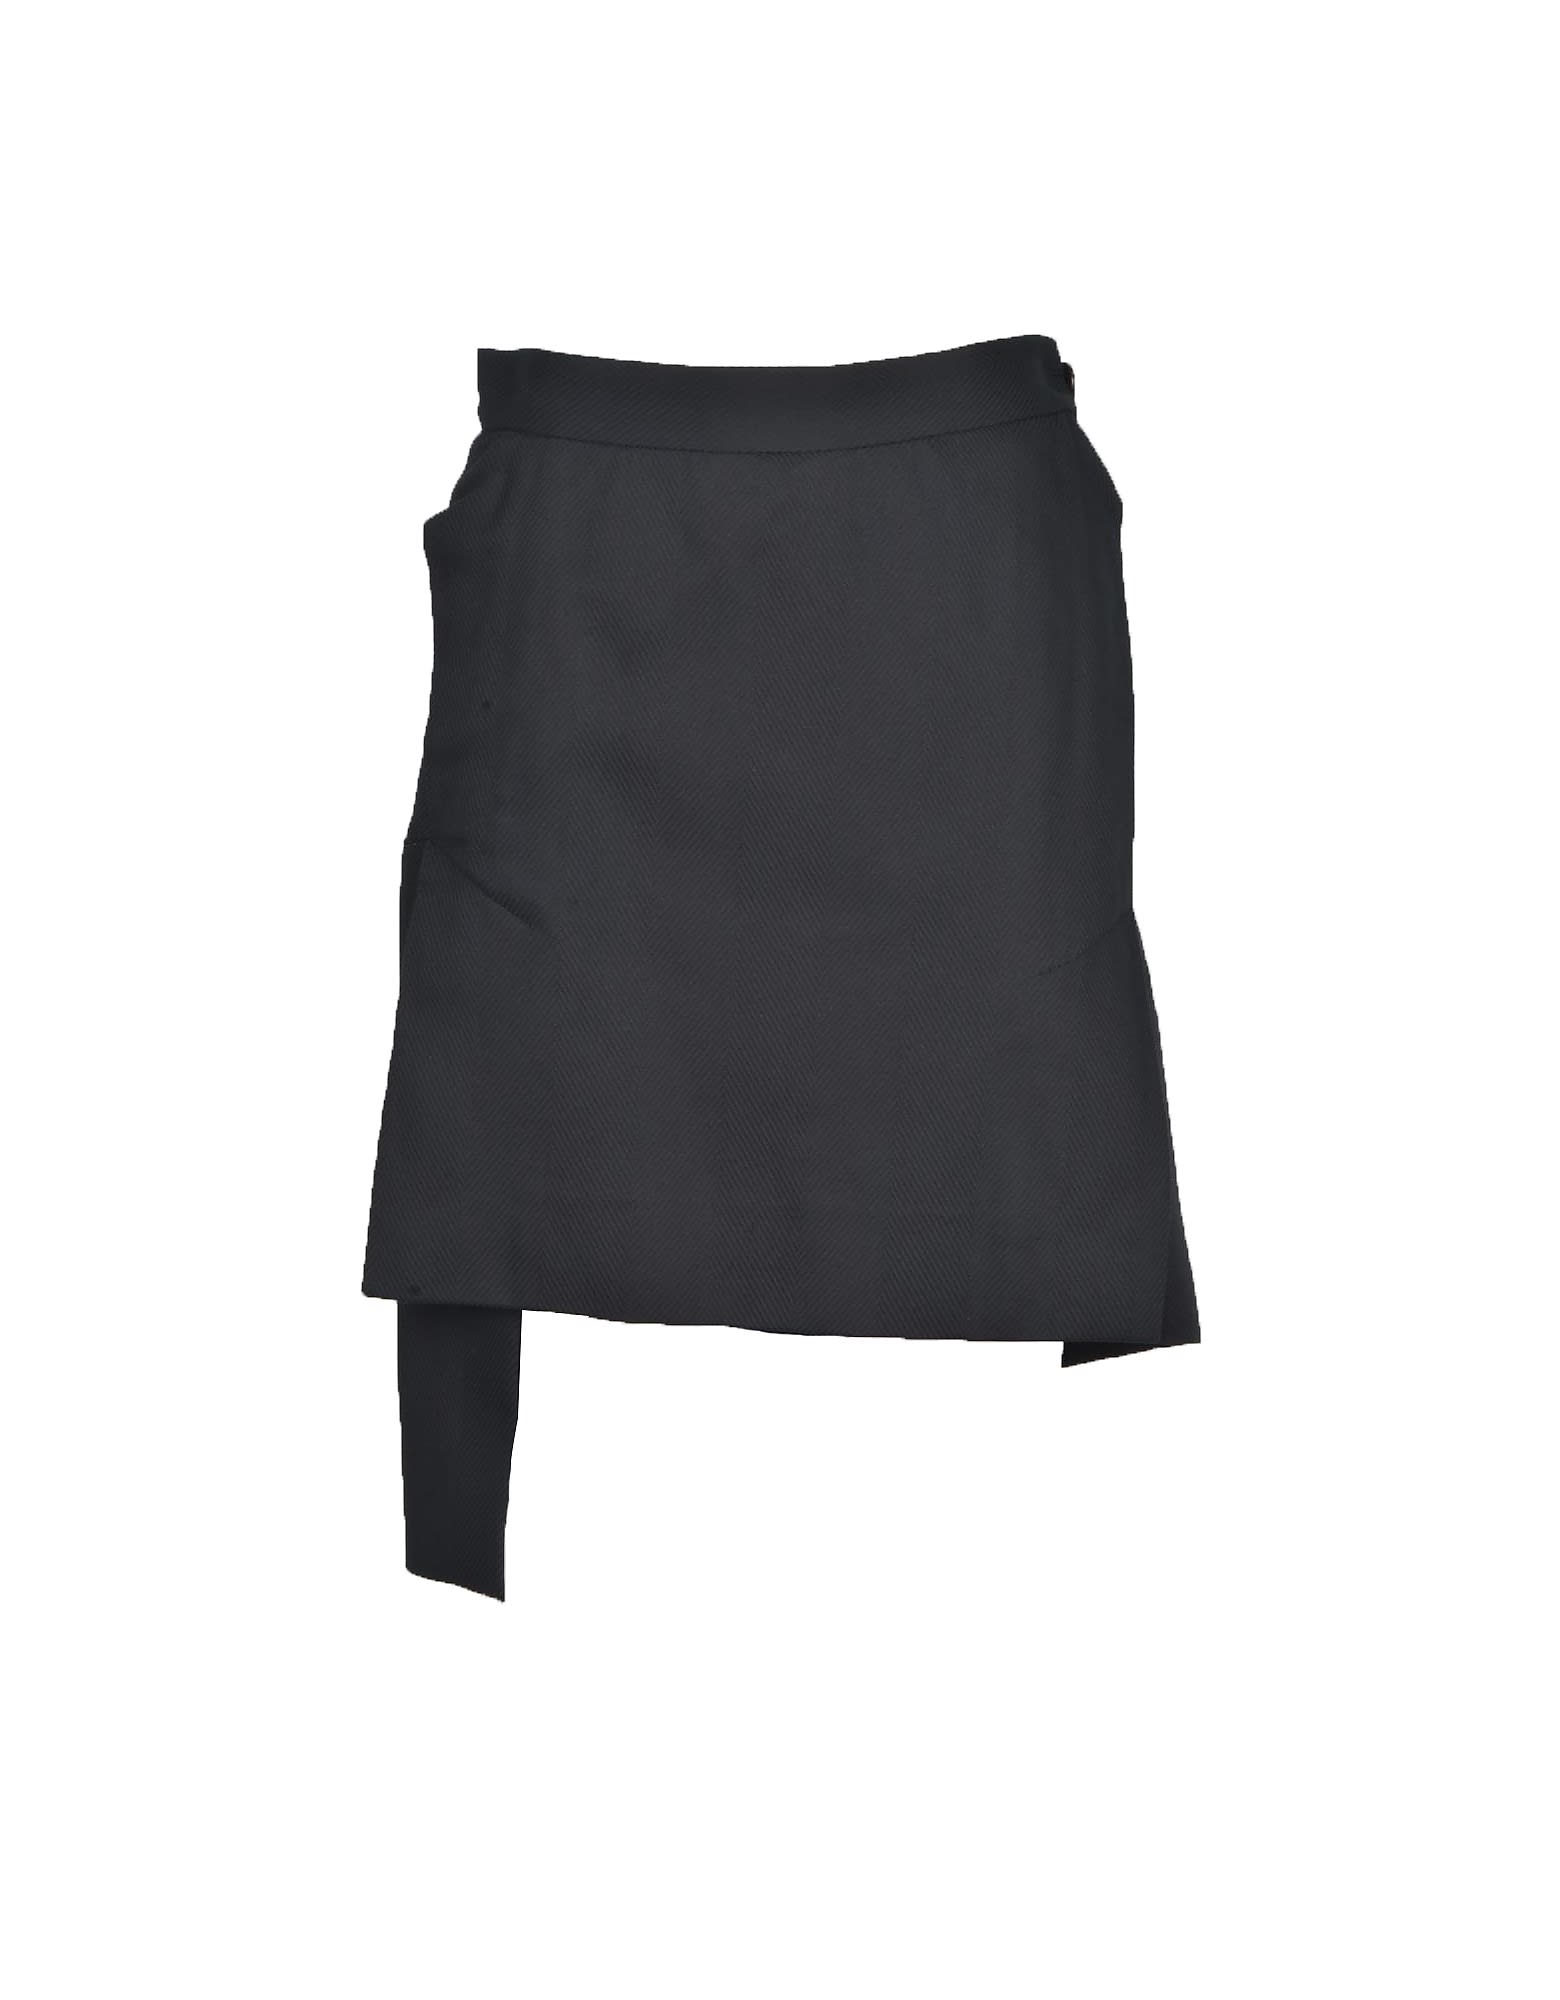 Vivienne Westwood Womens Black Skirt